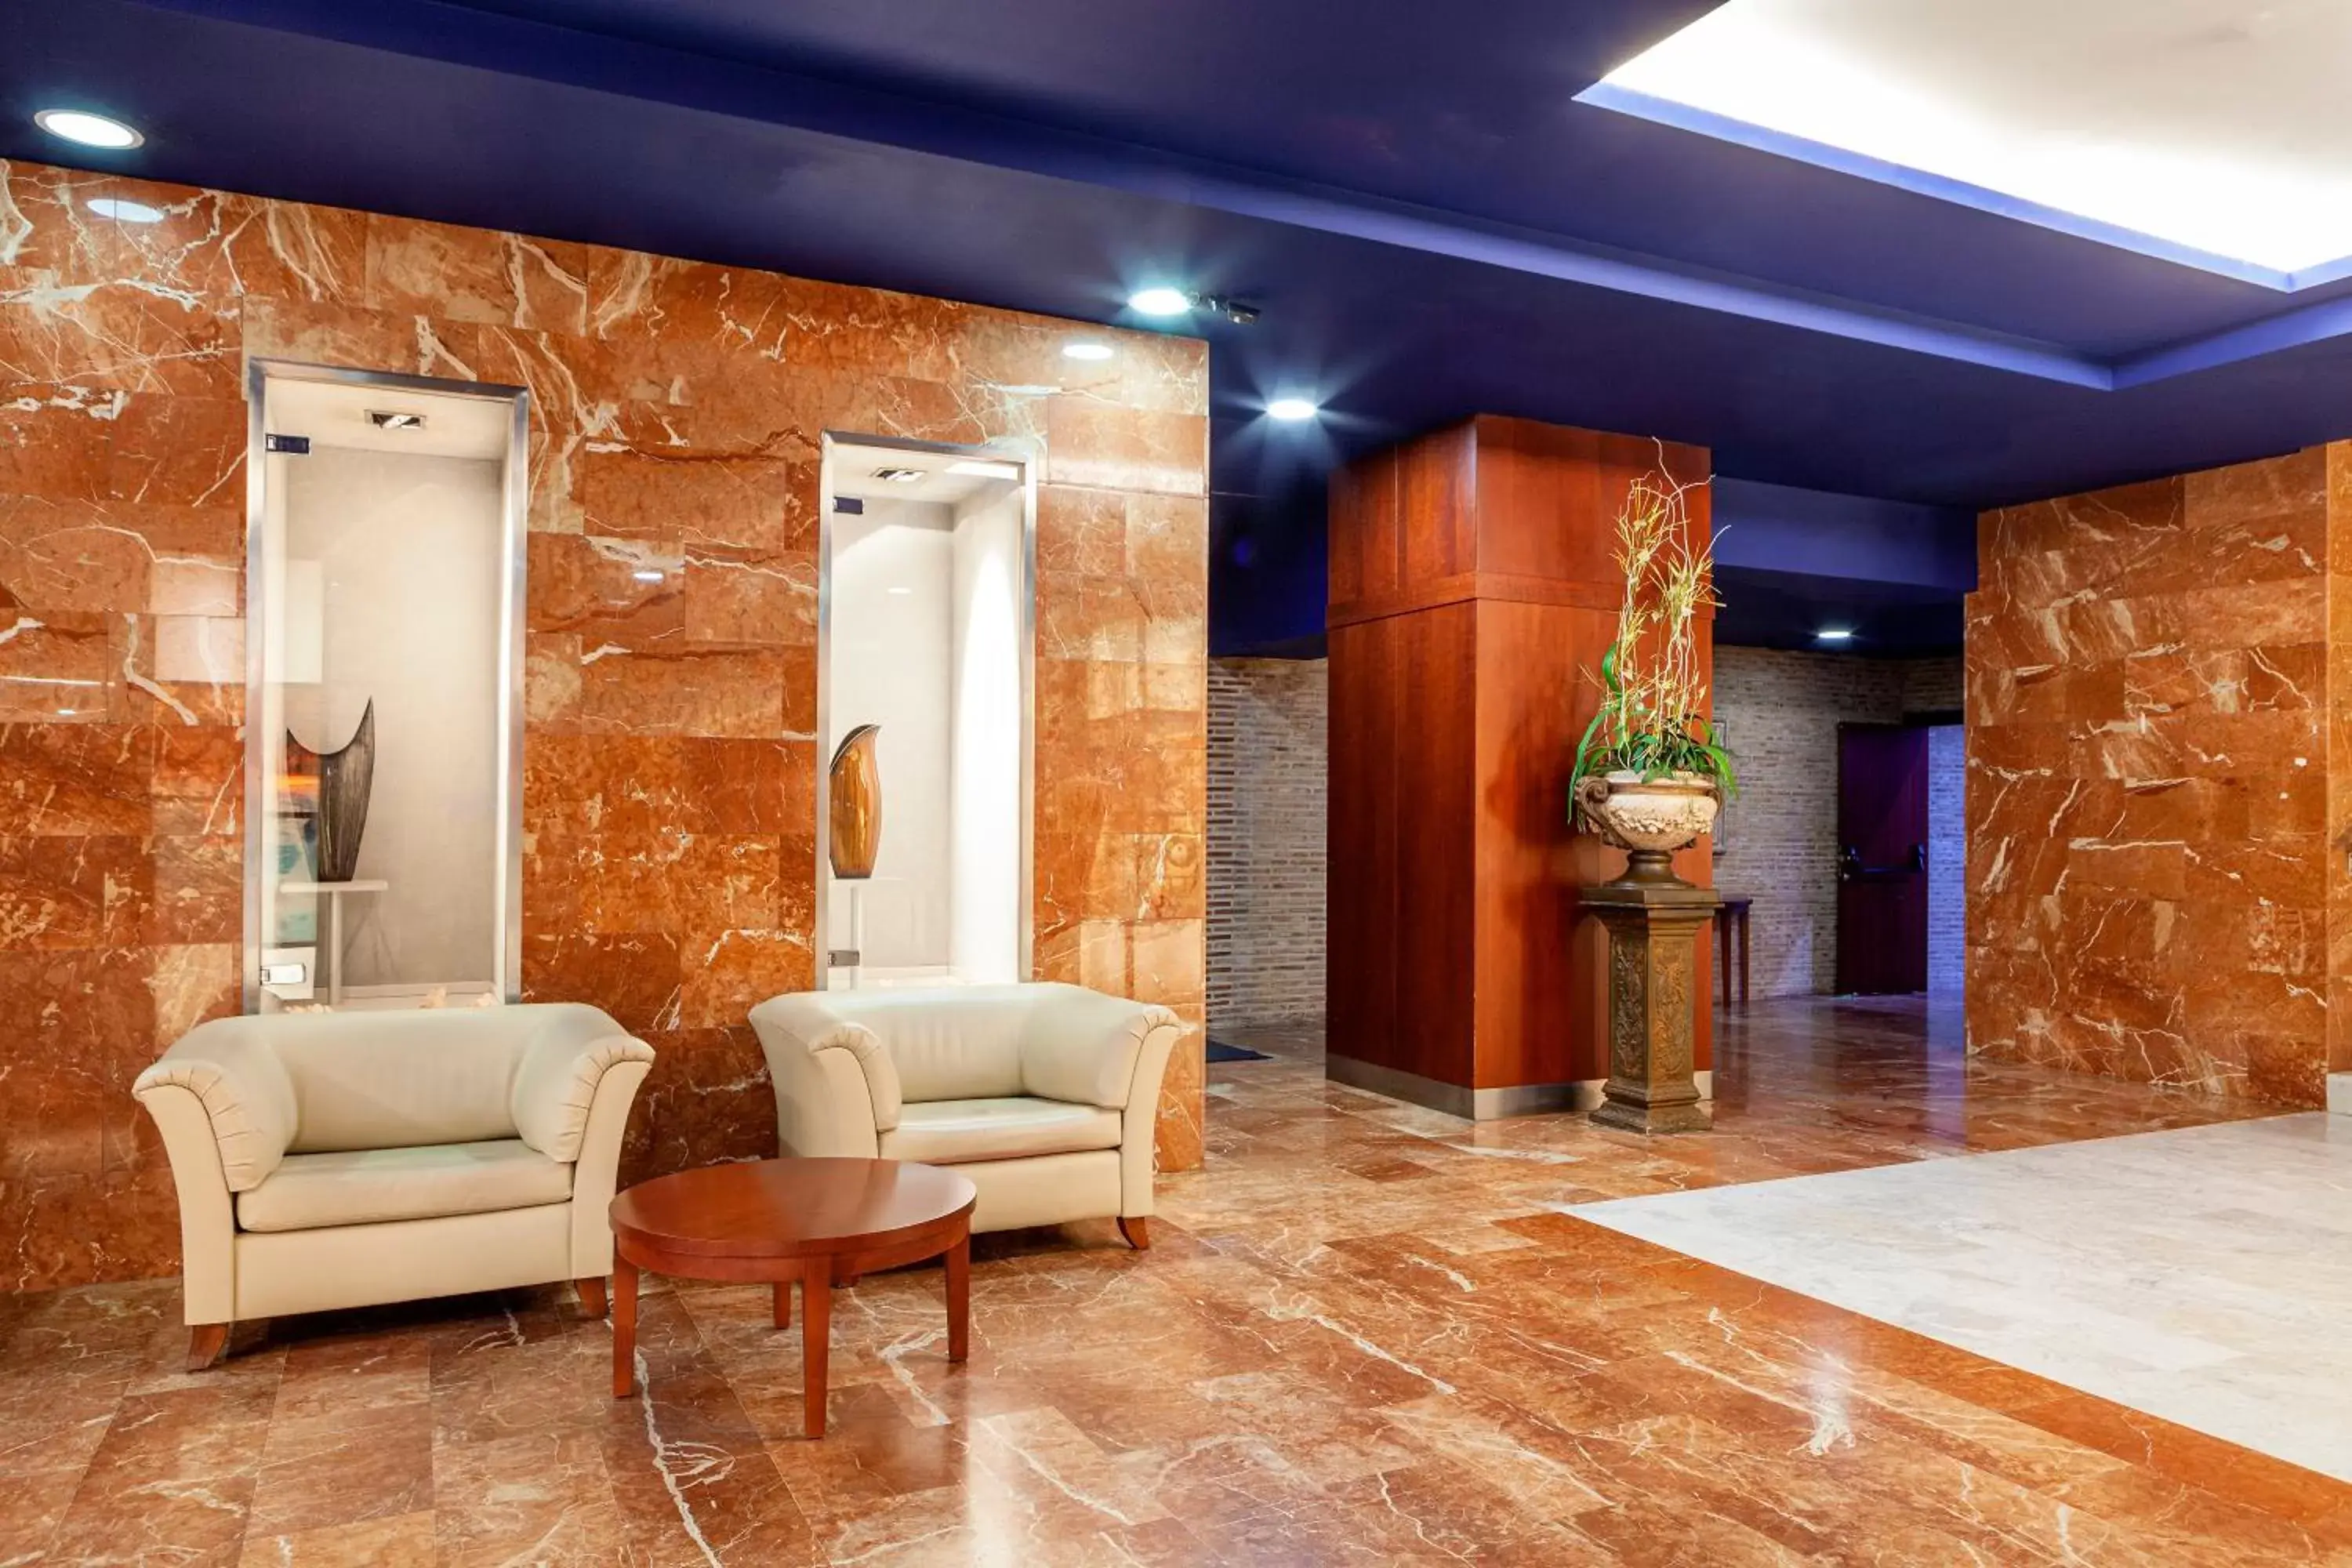 Lobby or reception, Lobby/Reception in Hotel Olympia Valencia